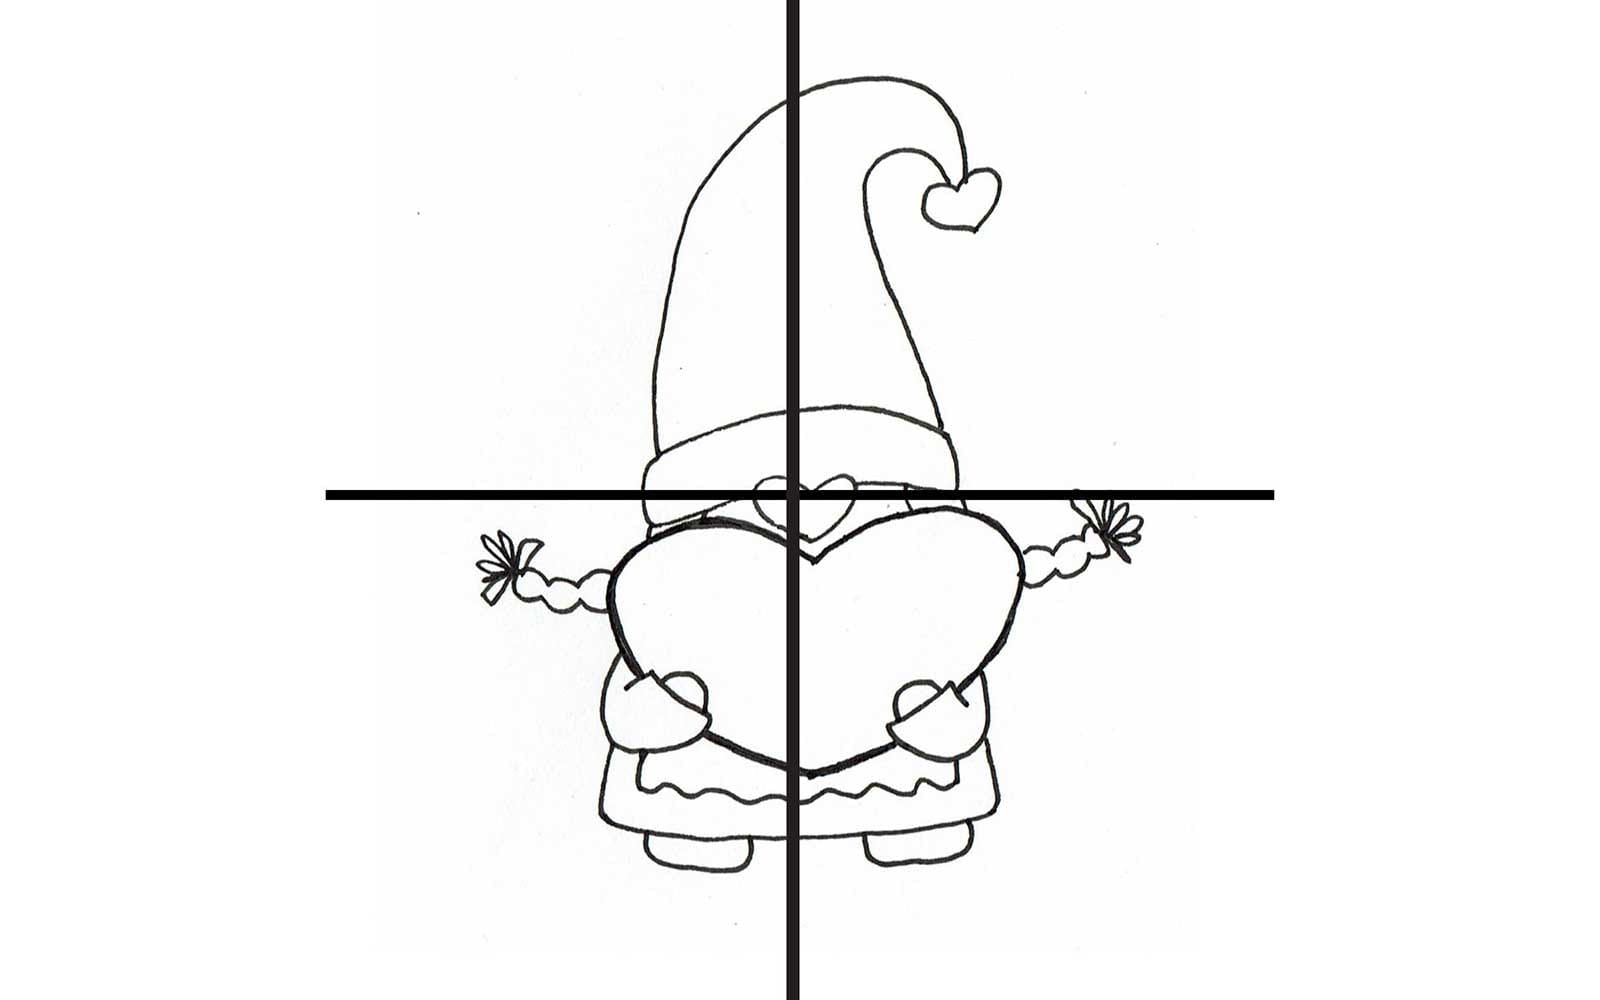 Diagramme du gnome du miel avec croix de placement